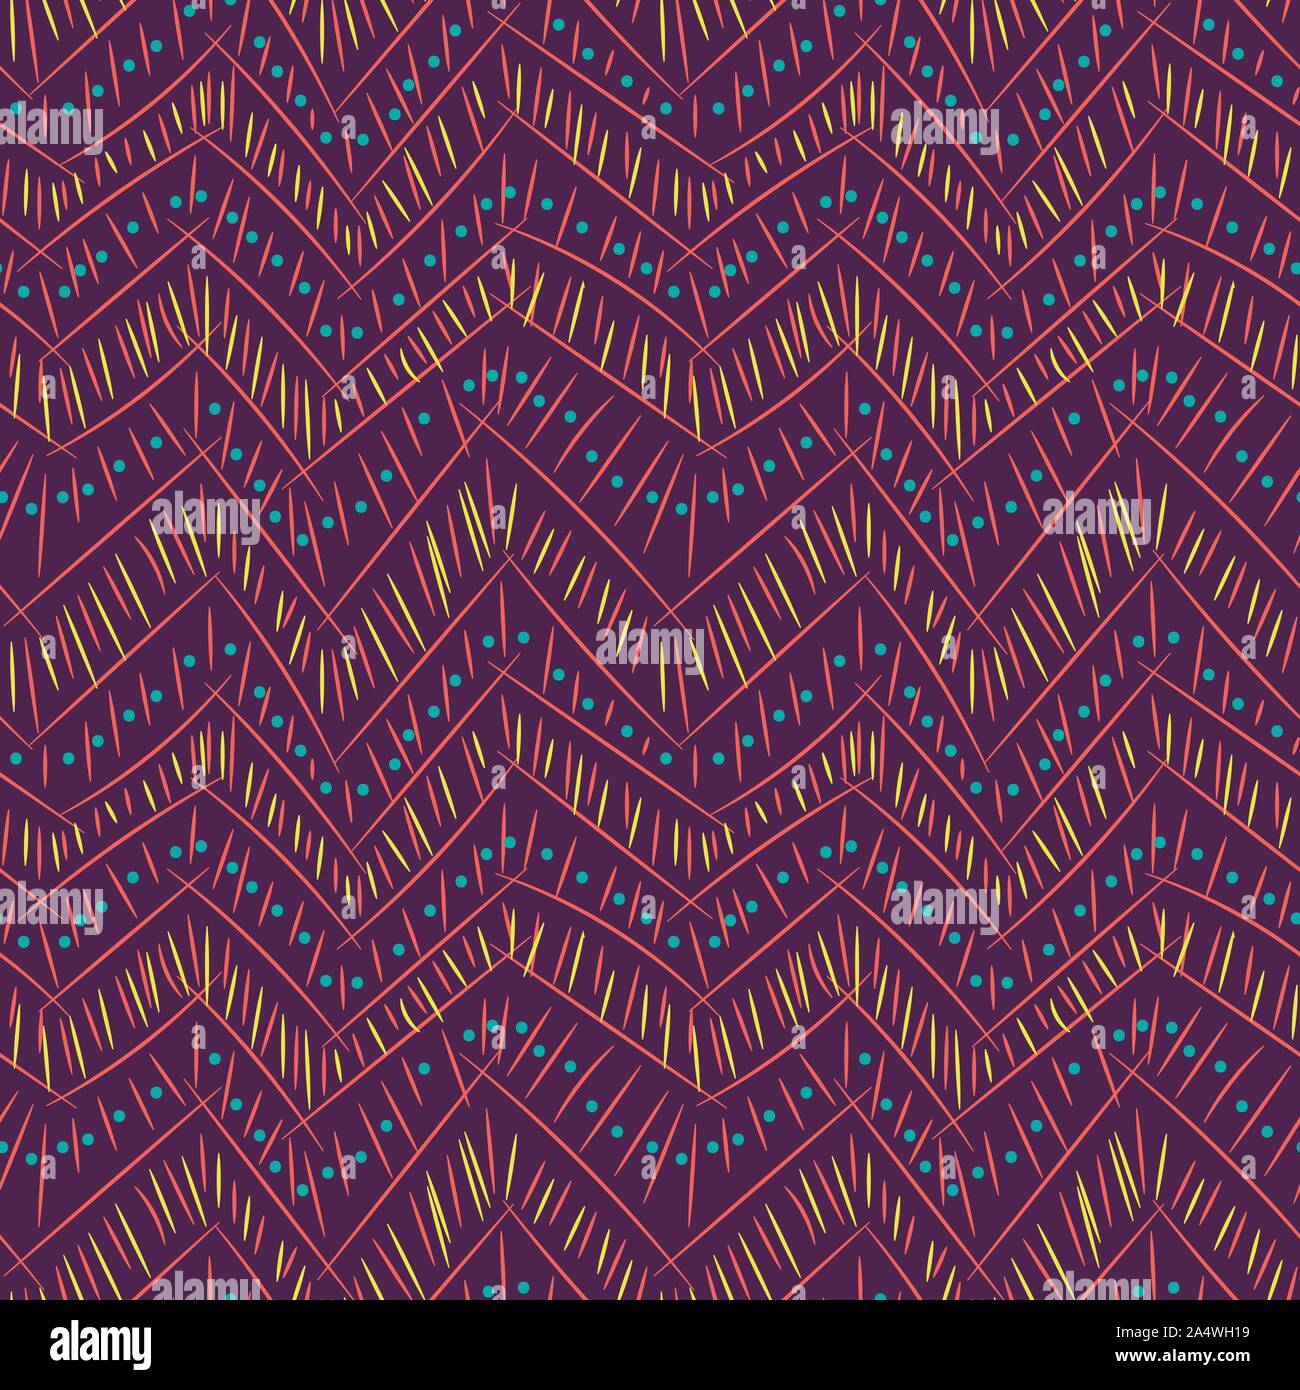 Die nahtlose Vektor Zick-Zack-Muster mit doodlelines auf lila Hintergrund Stock Vektor